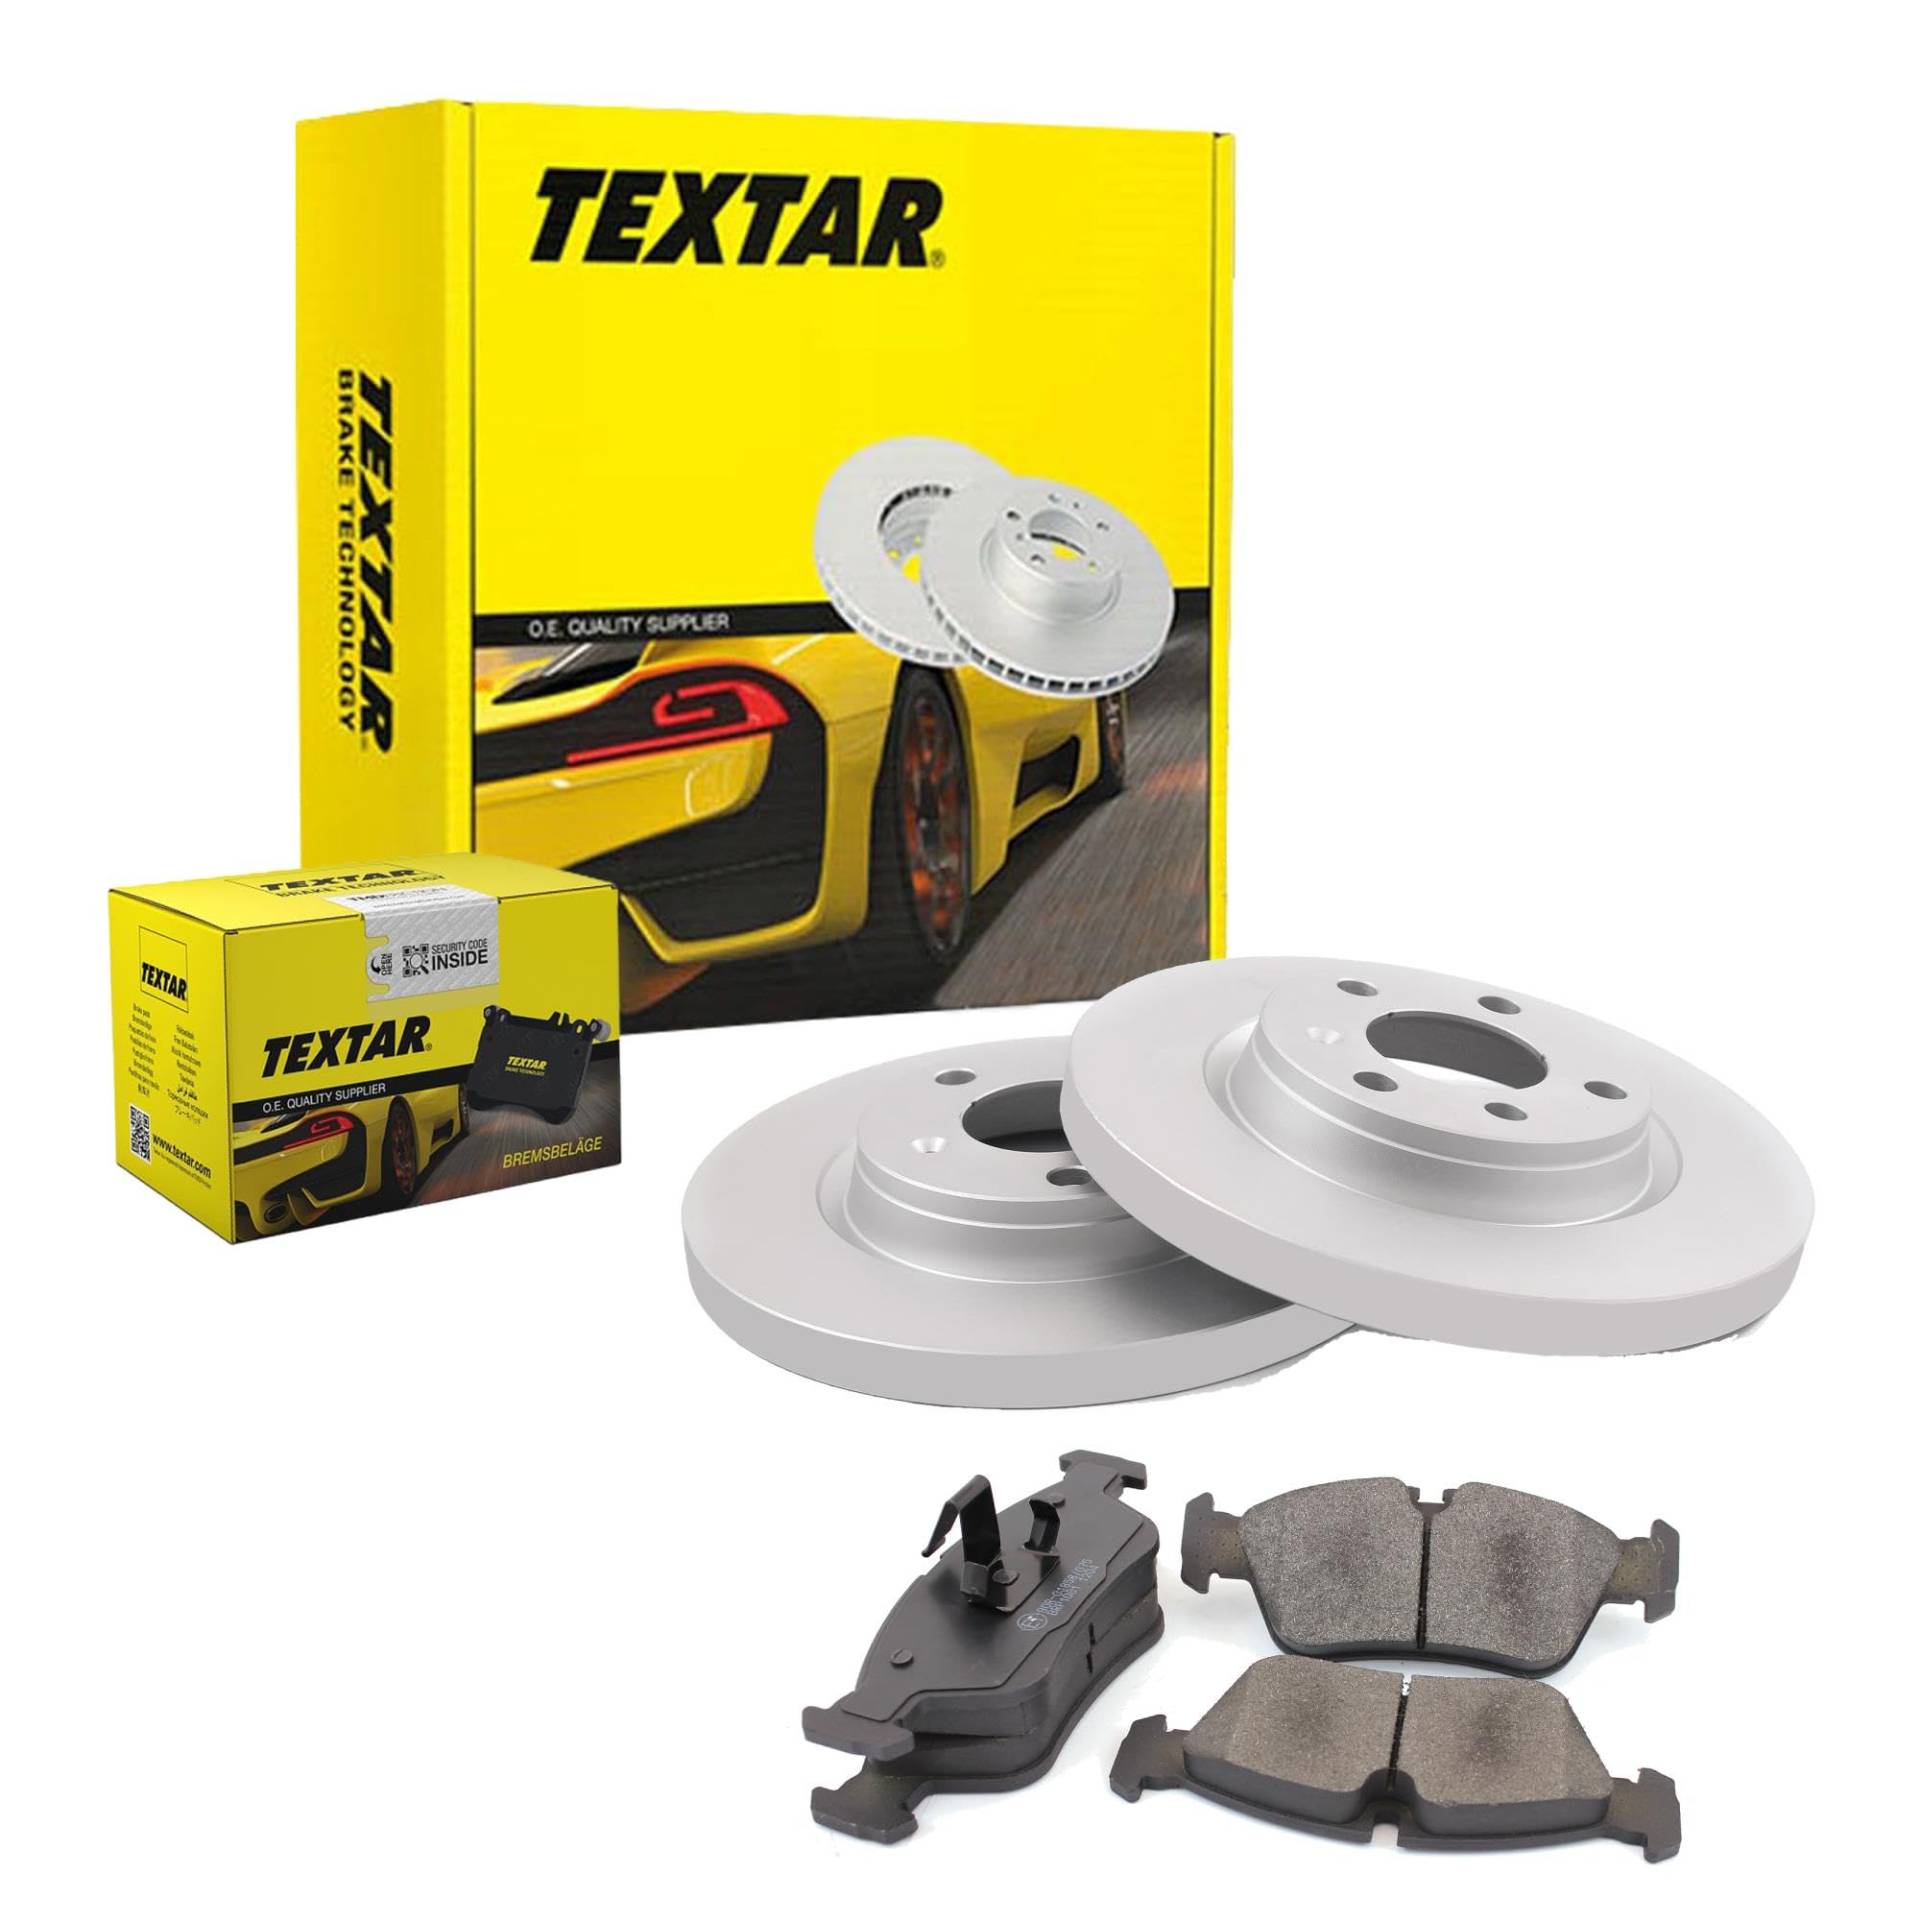 TEXTAR Bremsen Set Bremsscheiben Scheibenbremsen Ø245 Voll beschichtet hinten + Bremsbeläge Bremsklötze für A4 Exeo ST von Generic